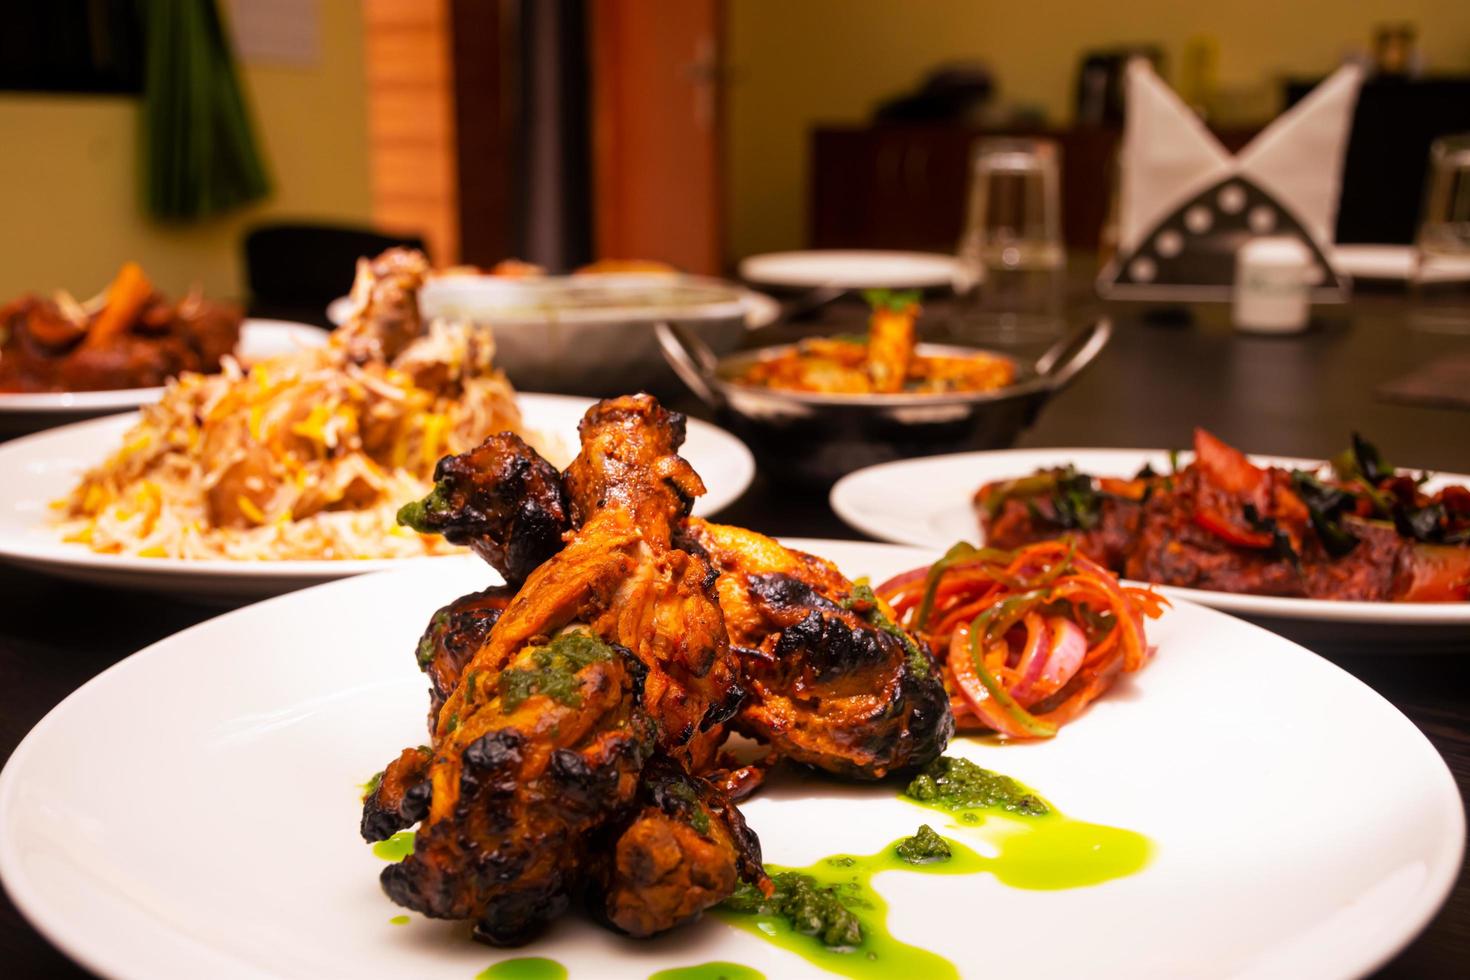 le concept de cuisses de poulet de la cuisine indienne avec des épices et des chaussures photo